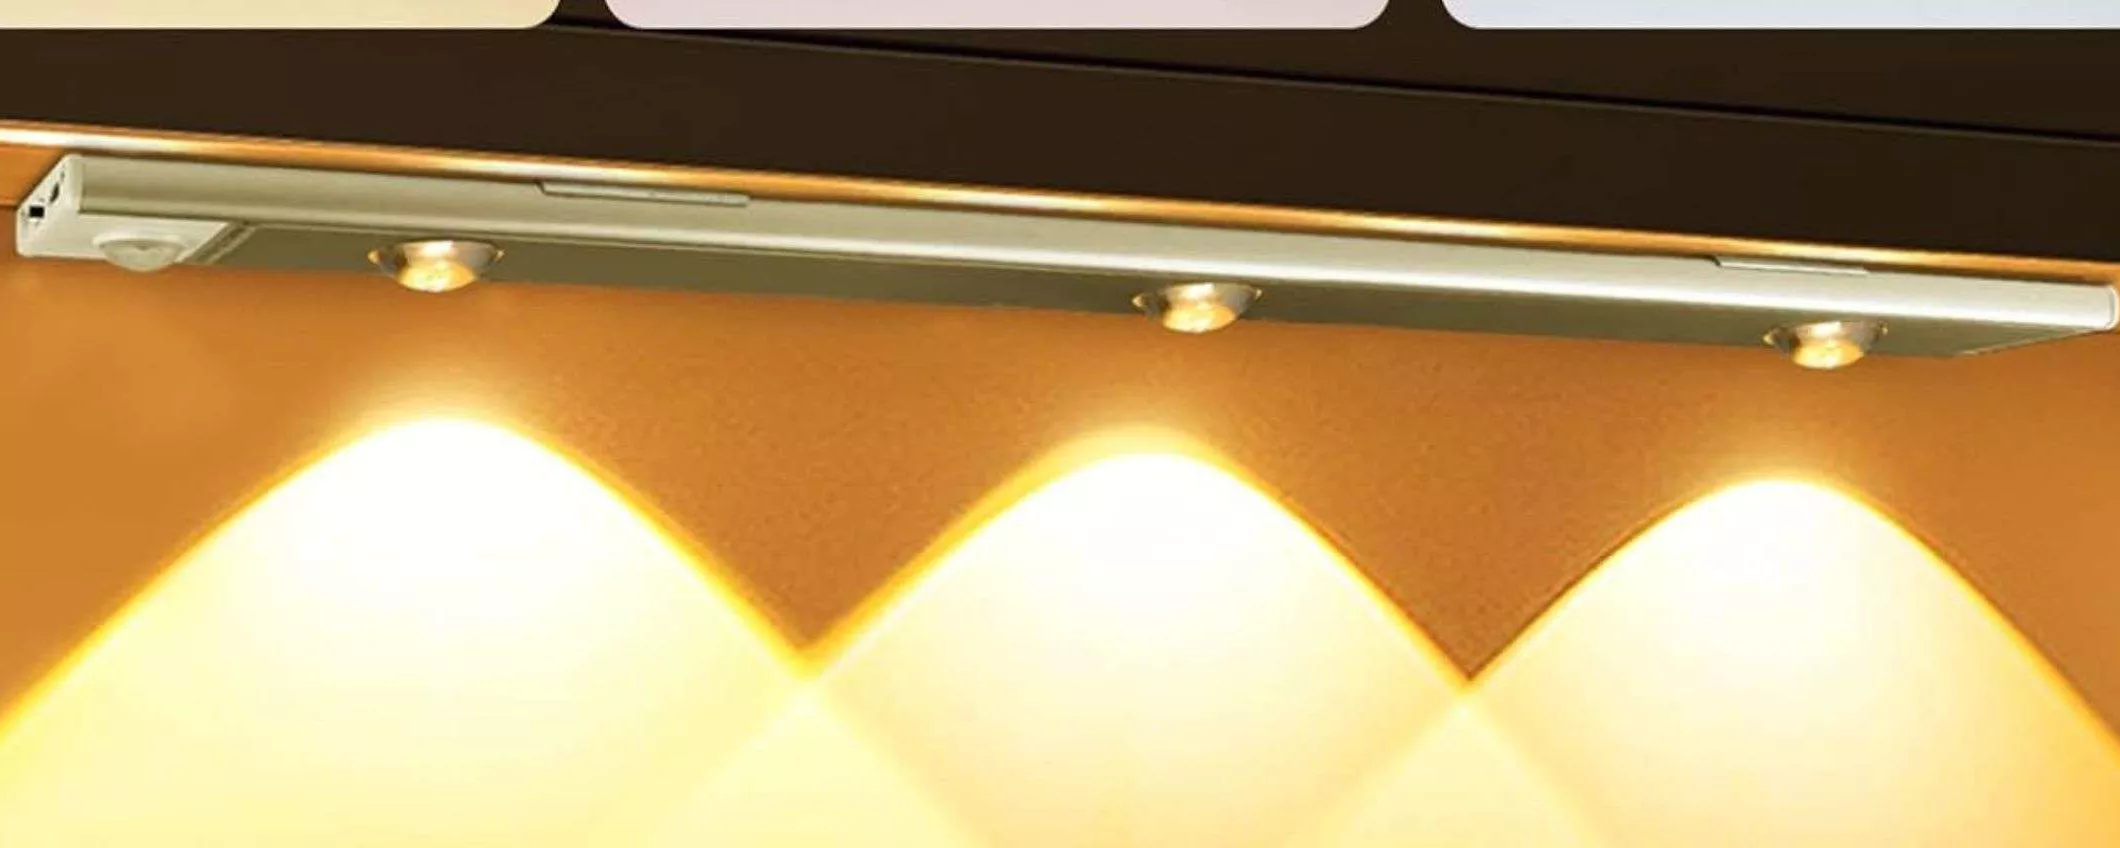 Solo 8,99€ per questa luce WIRELESS automatica lunga 40 cm (Amazon)